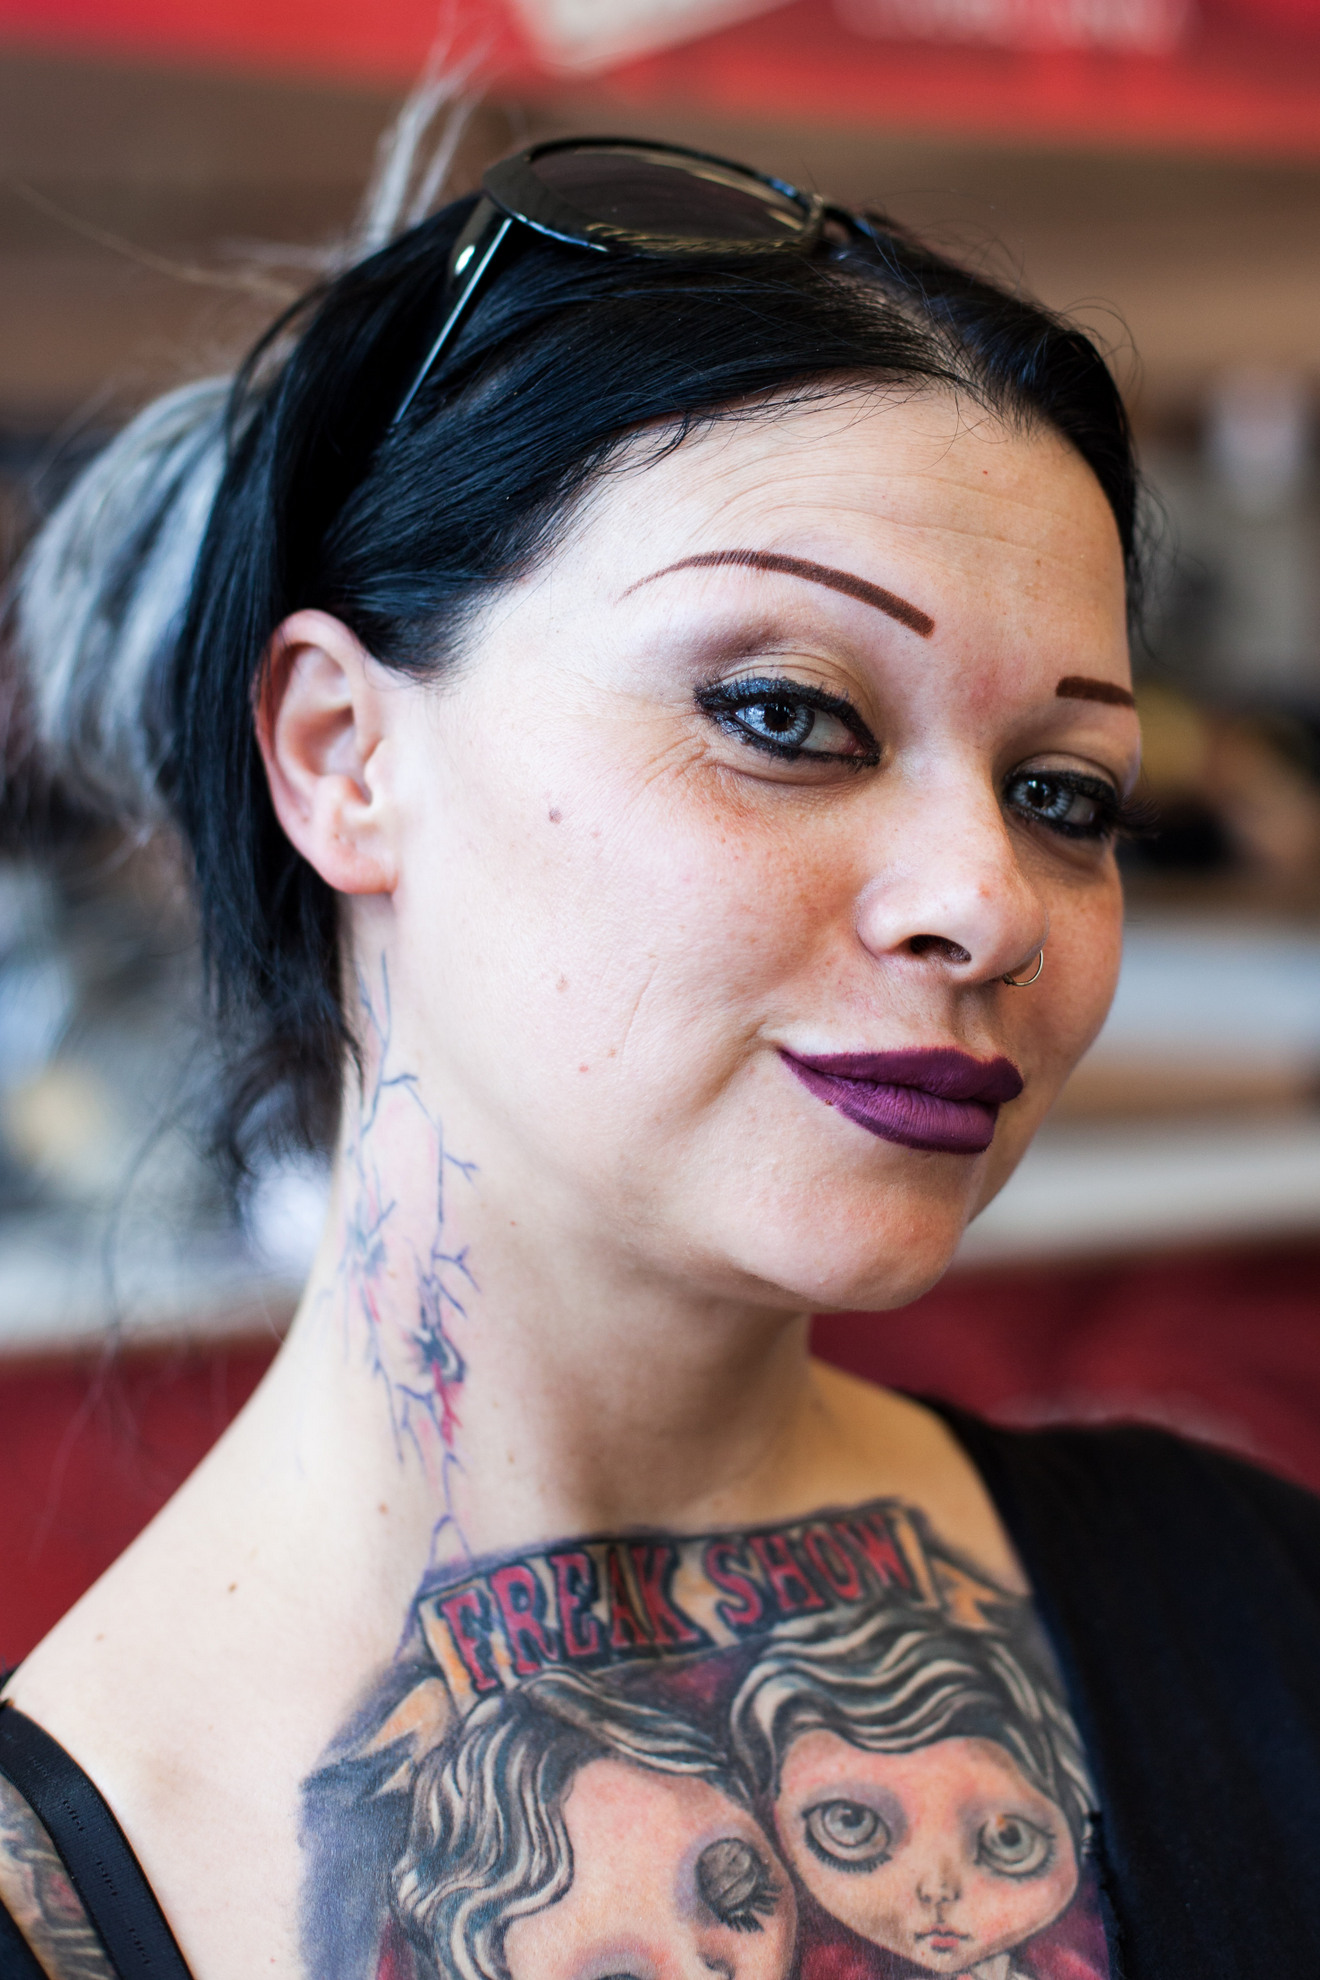 16. 04. 2016 Ljubljana, Gospodarsko razstavišče. Med 15. in 17. aprilom je v Ljubljani potekala 8. tradicionalna tattoo konvencija. Dekle z umetnimi lečami v očeh.